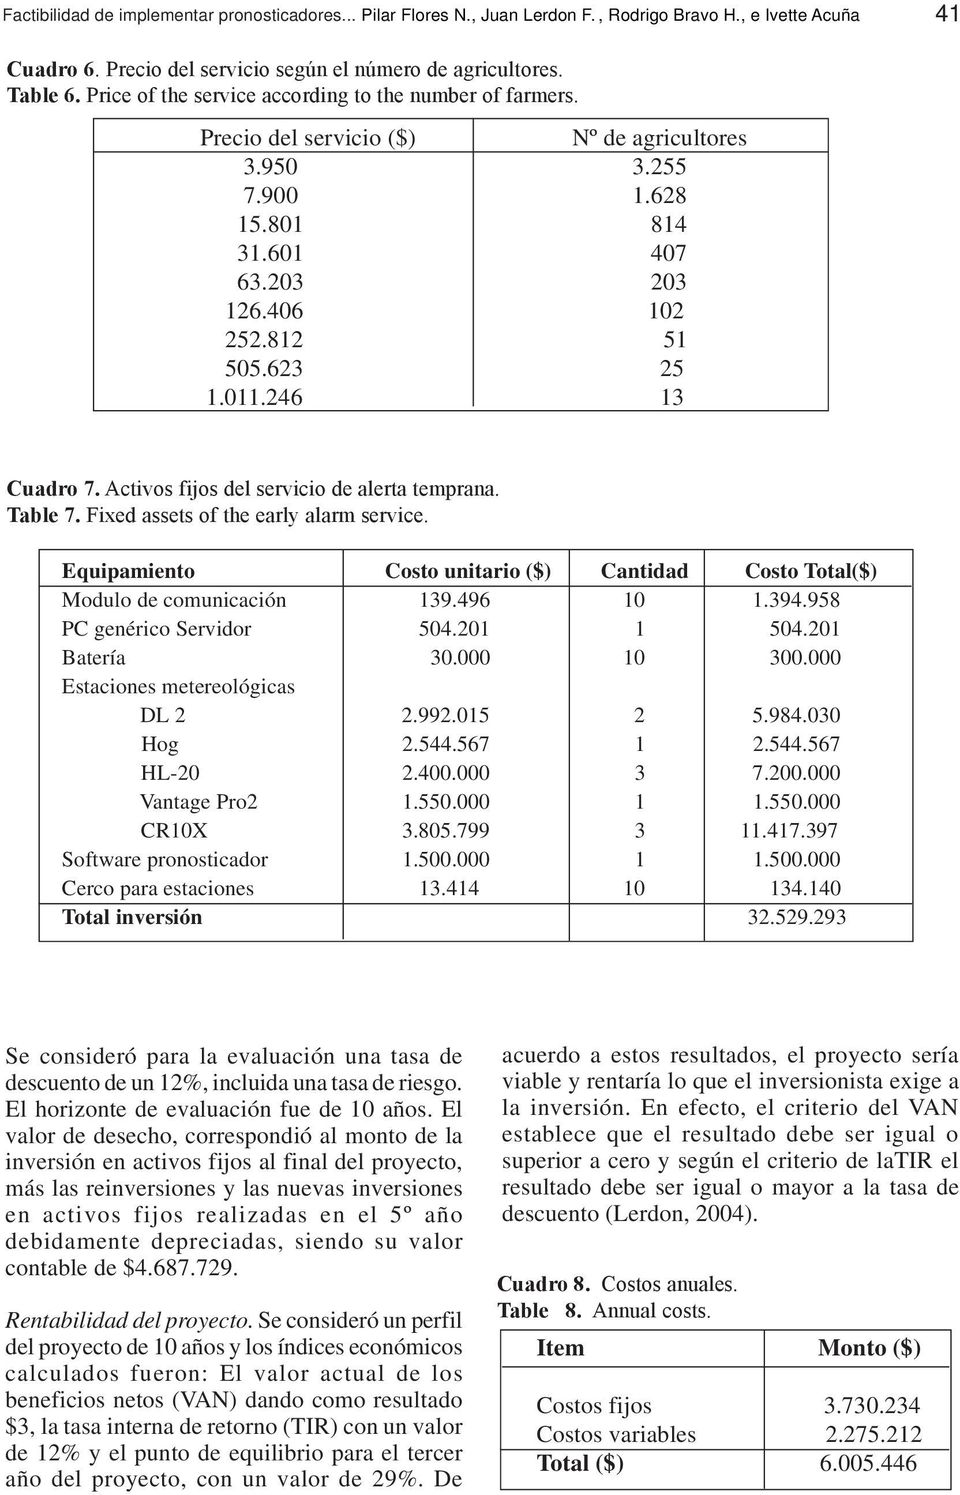 Activos fijos del servicio de alerta temprana. Table 7. Fixed assets of the early alarm service.